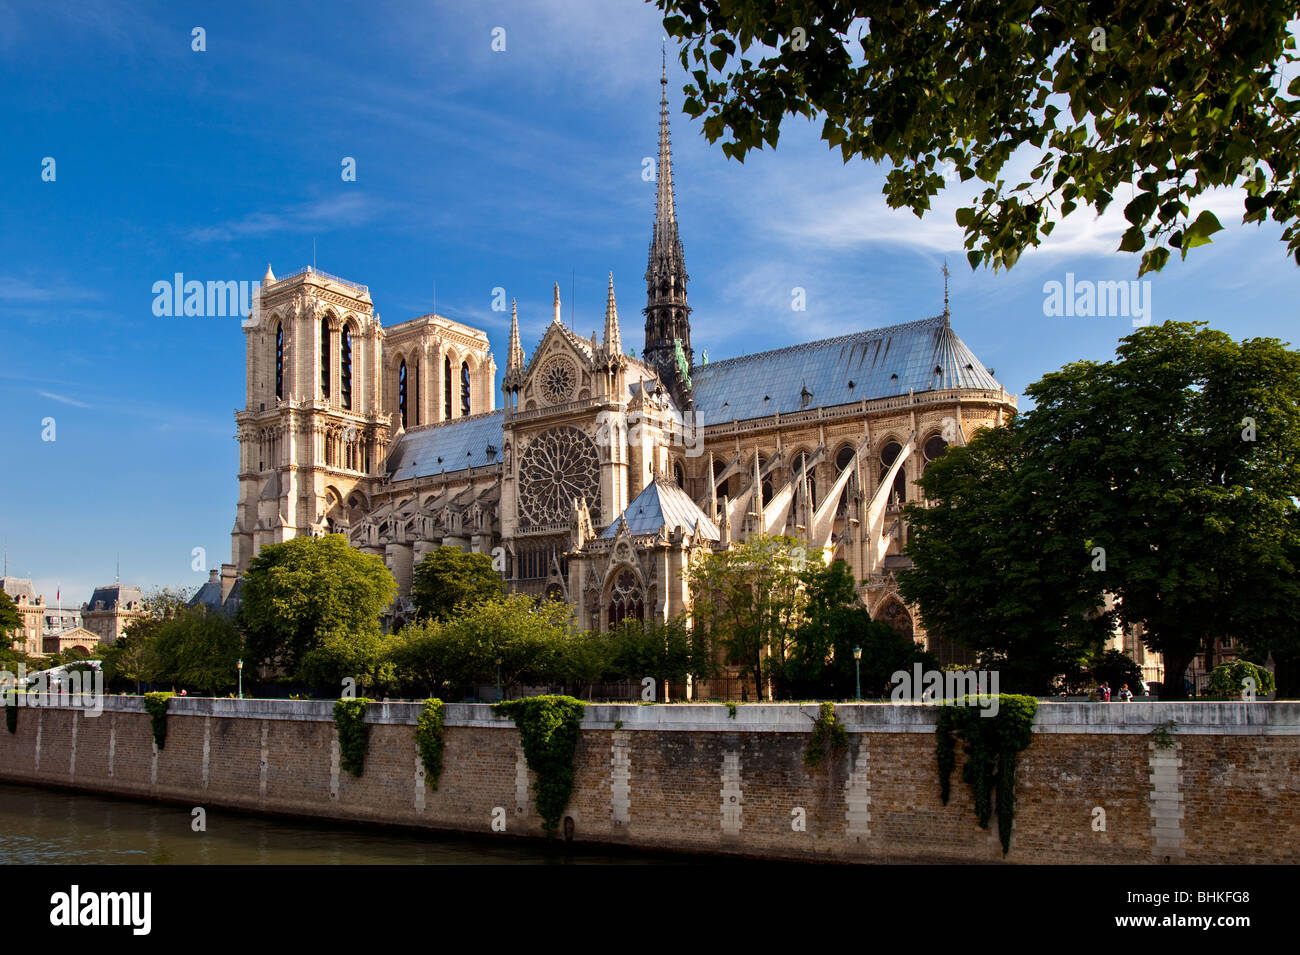 Cathédrale Notre Dame le long de la Seine, Paris France Banque D'Images